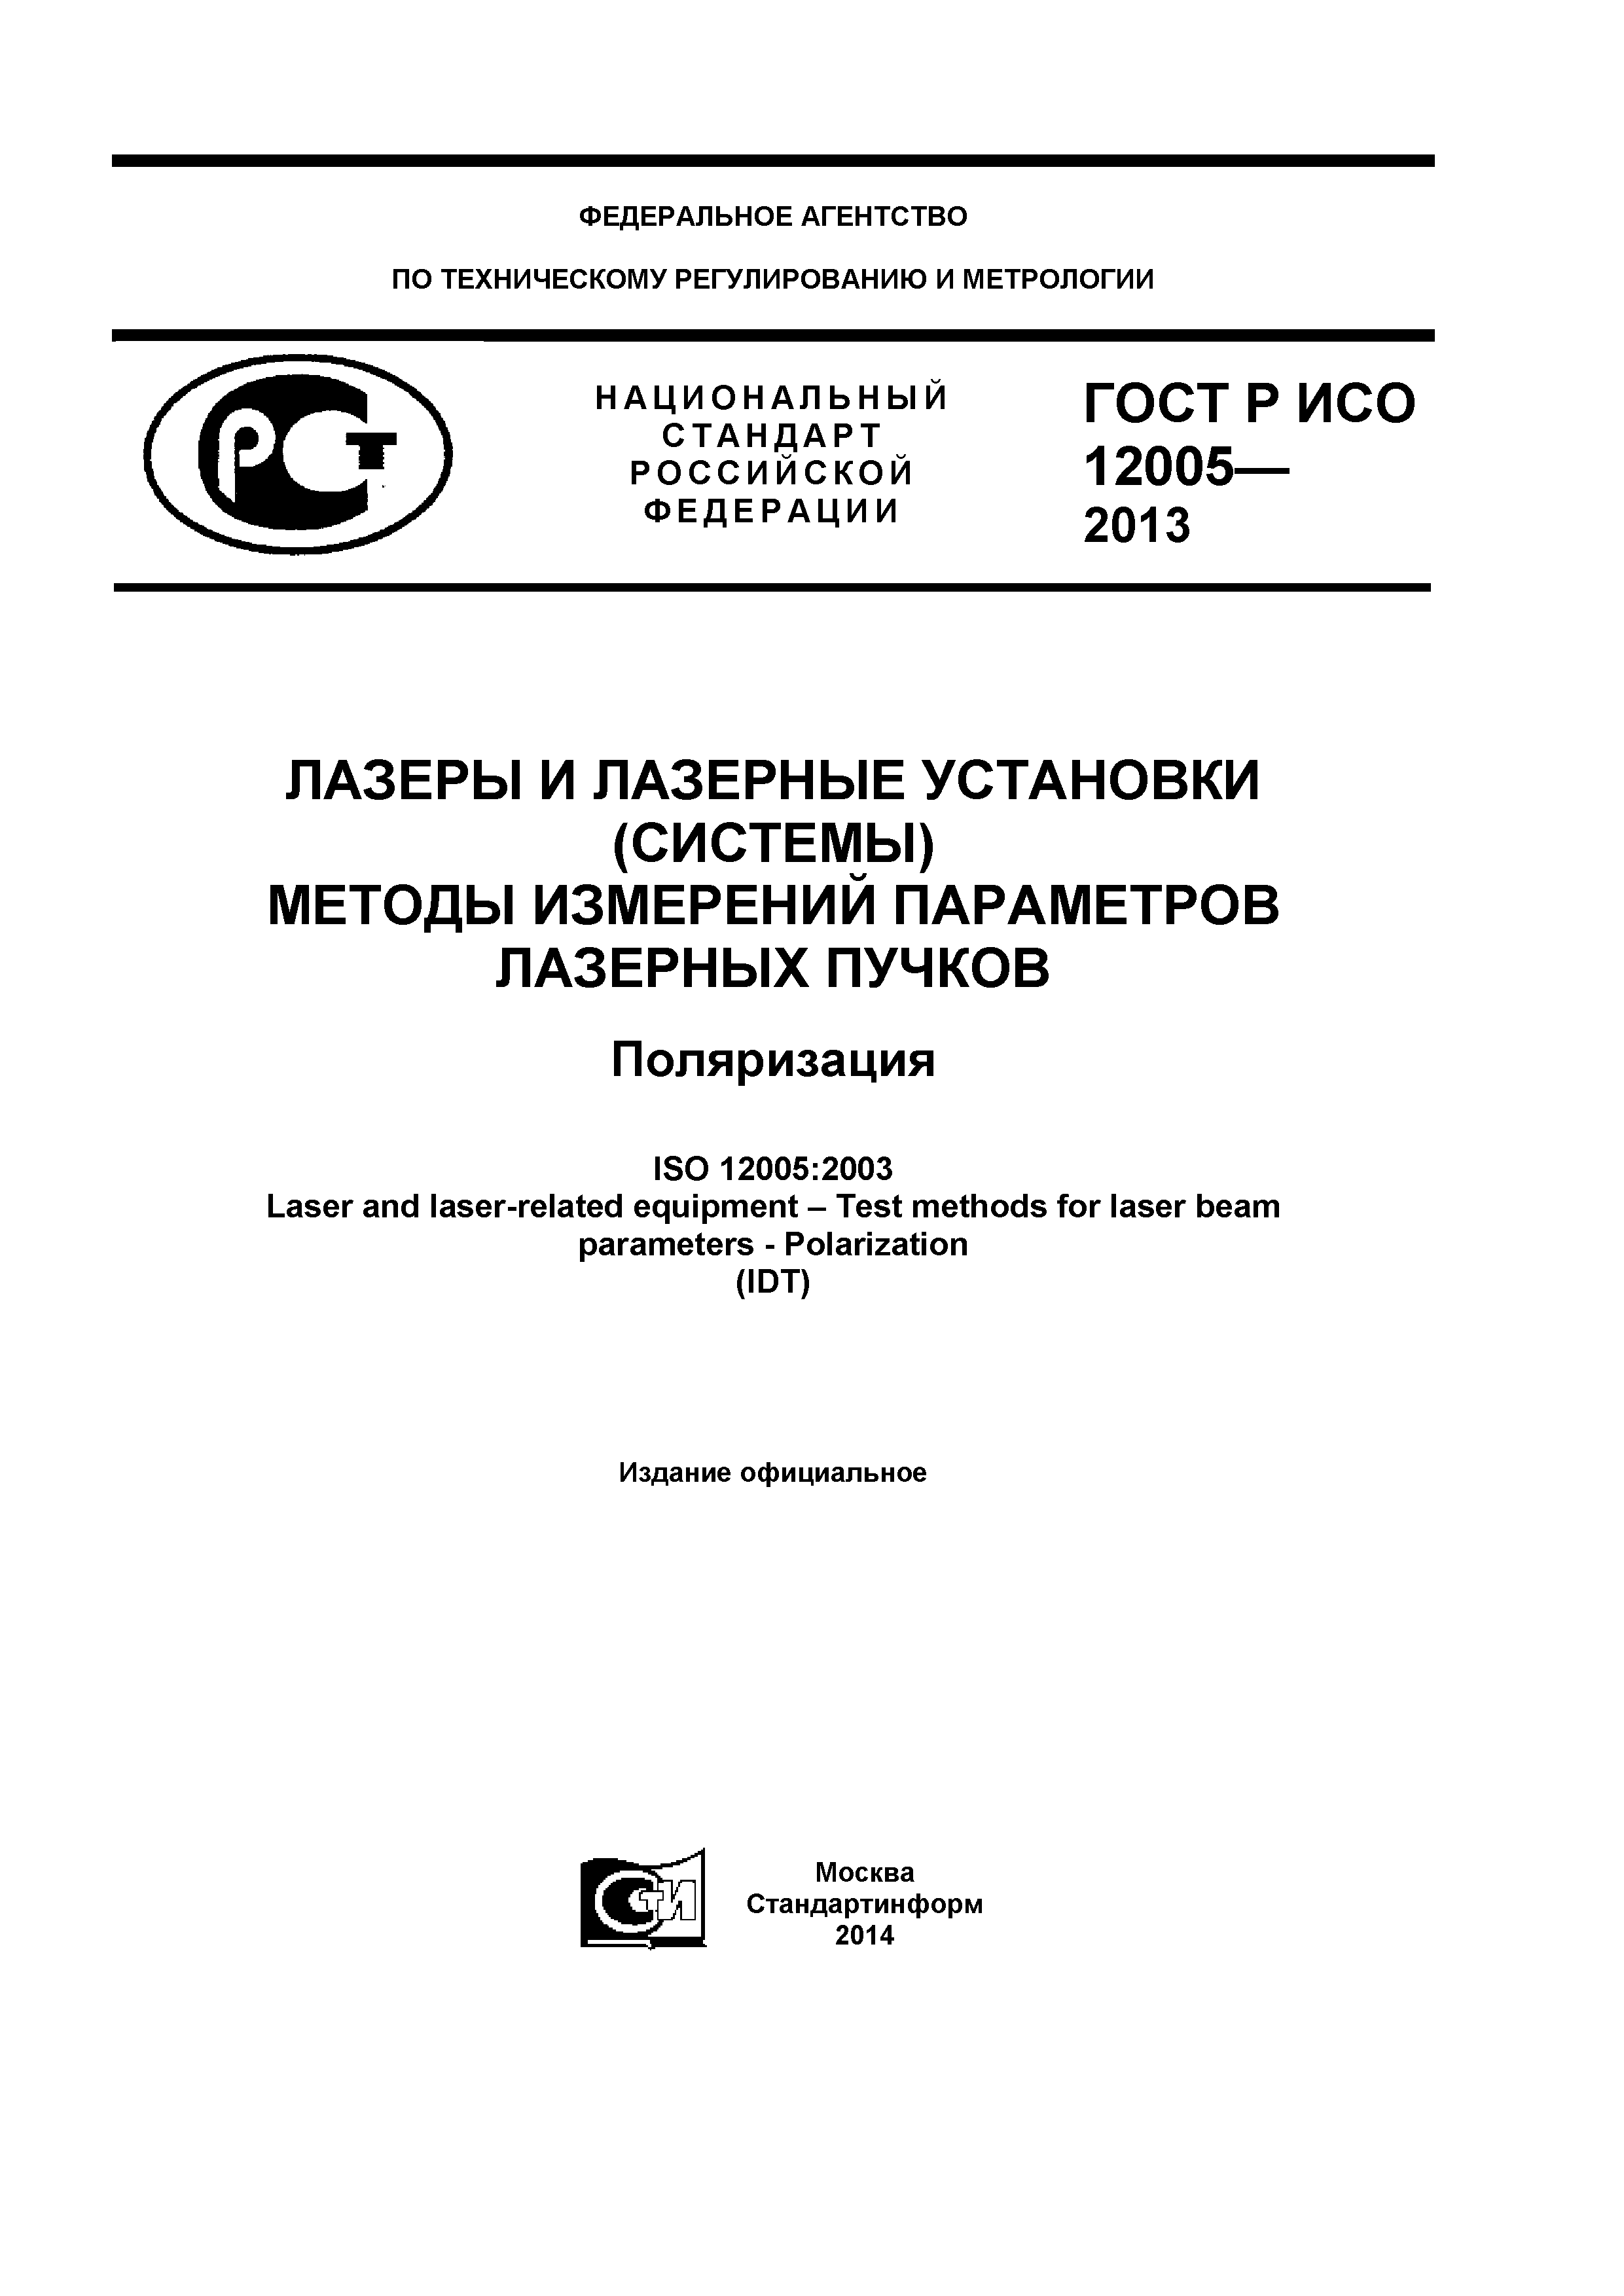 ГОСТ Р ИСО 12005-2013